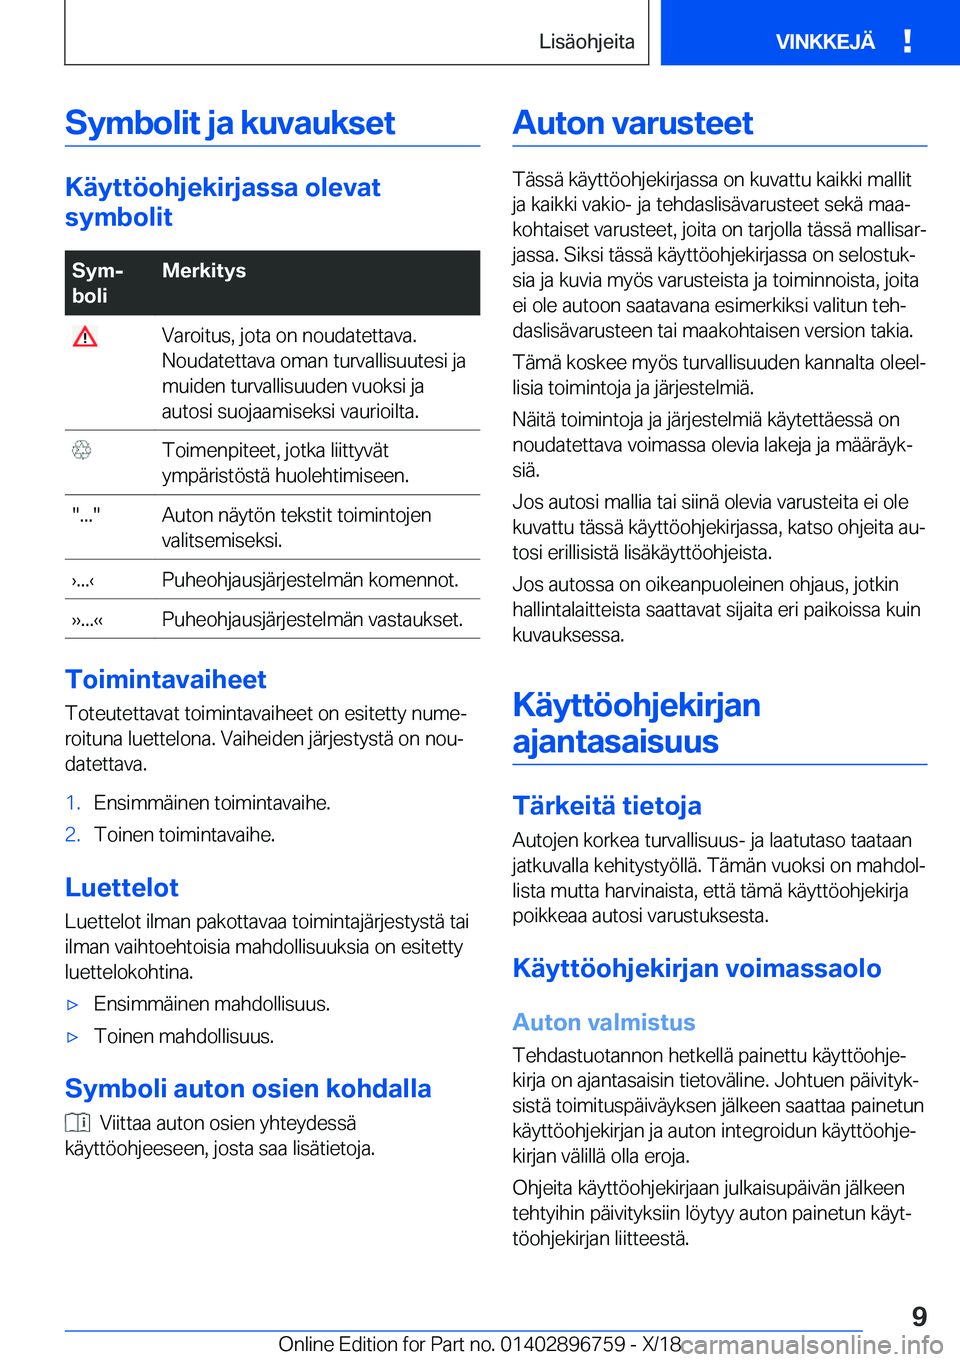 BMW X5 2019  Omistajan Käsikirja (in Finnish) �S�y�m�b�o�l�i�t��j�a��k�u�v�a�u�k�s�e�t
�K�